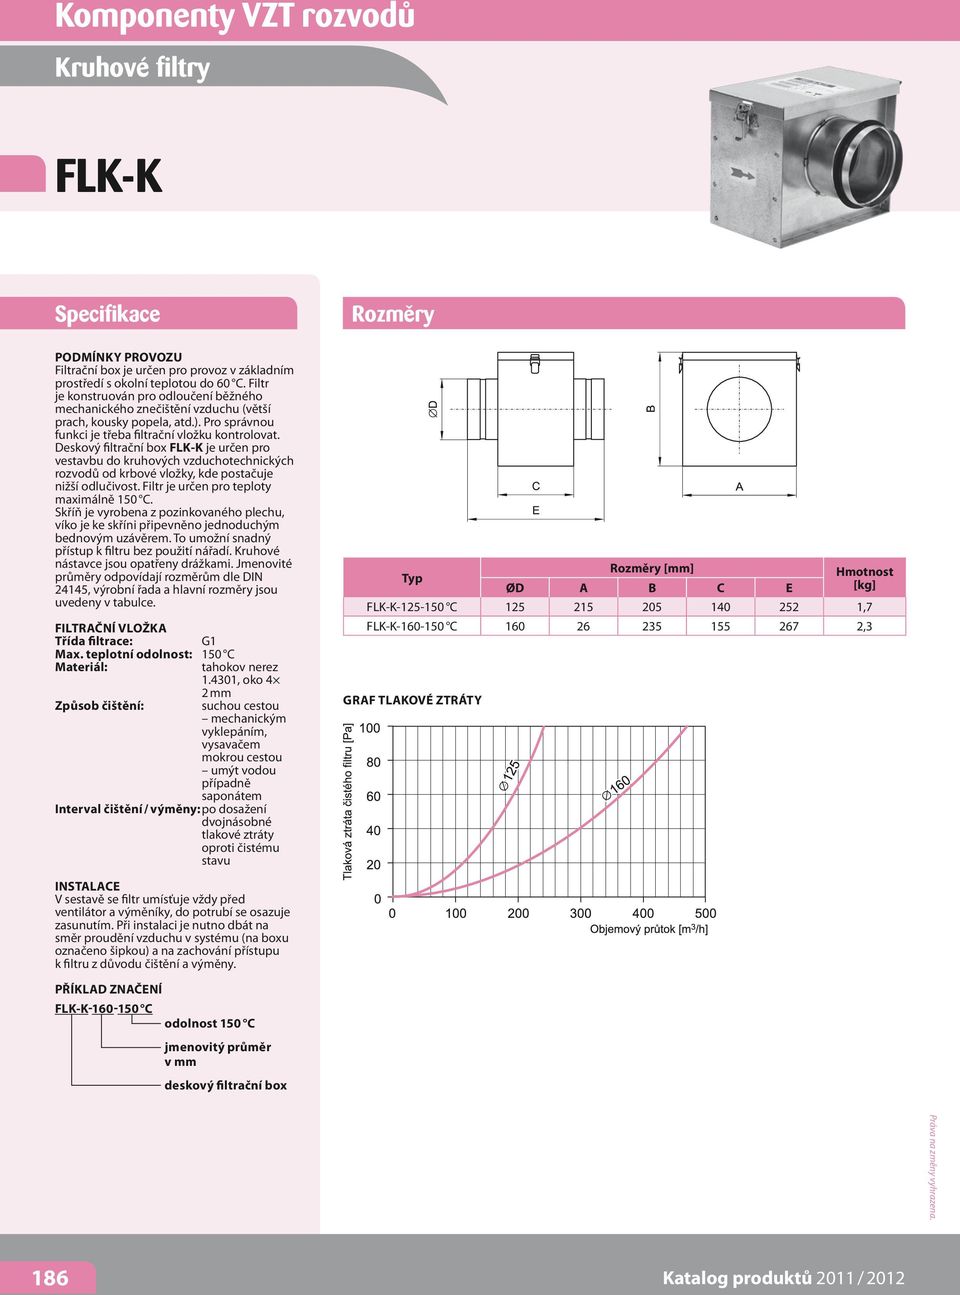 Deskový filtrační box FLK-K je určen pro vestavbu do kruhových vzduchotechnických rozvodů od krbové vložky, kde postačuje nižší odlučivost. Filtr je určen pro teploty maximálně 150 C.